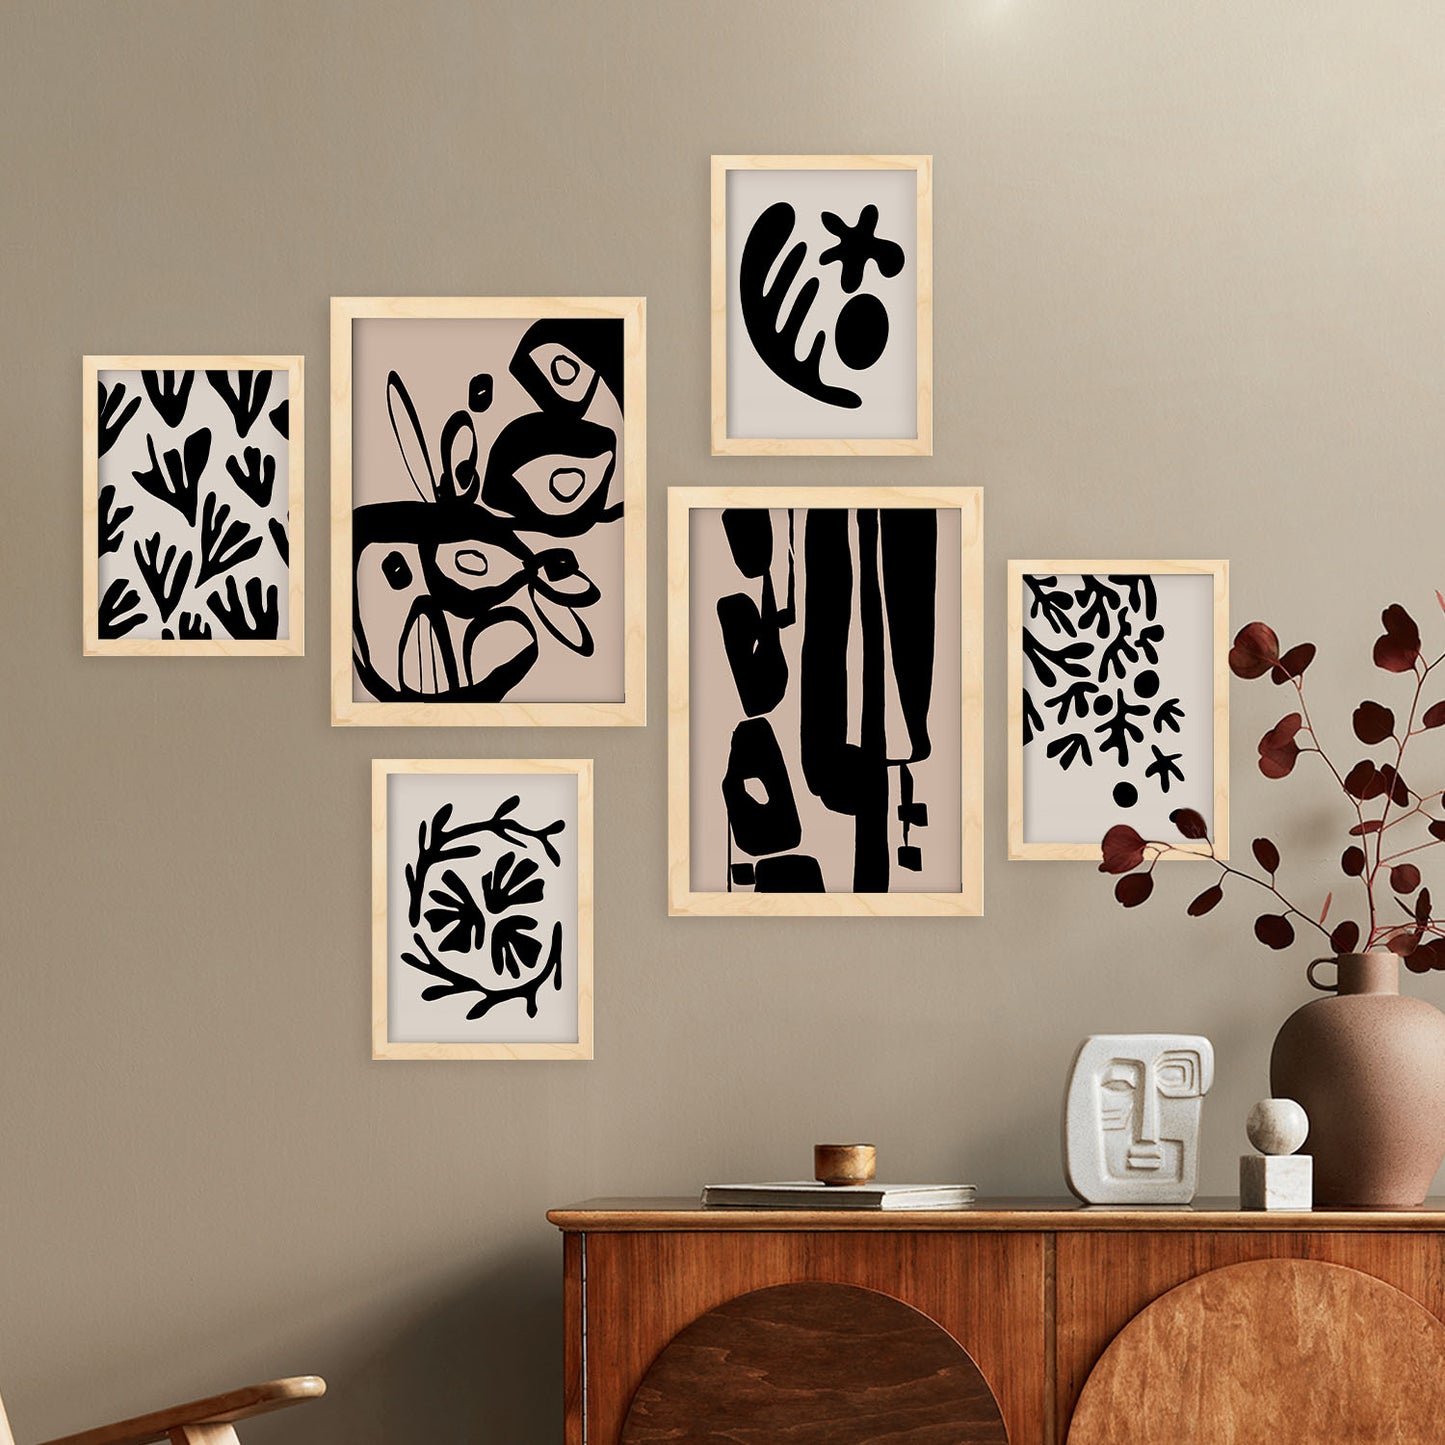 Nacnic Set de 6 Diseño de mística Posters. En Abstracto de las flores. Estampados decorativos estéticos para su sala de estar, dormitorio, hogar Tamaños A4 y A3